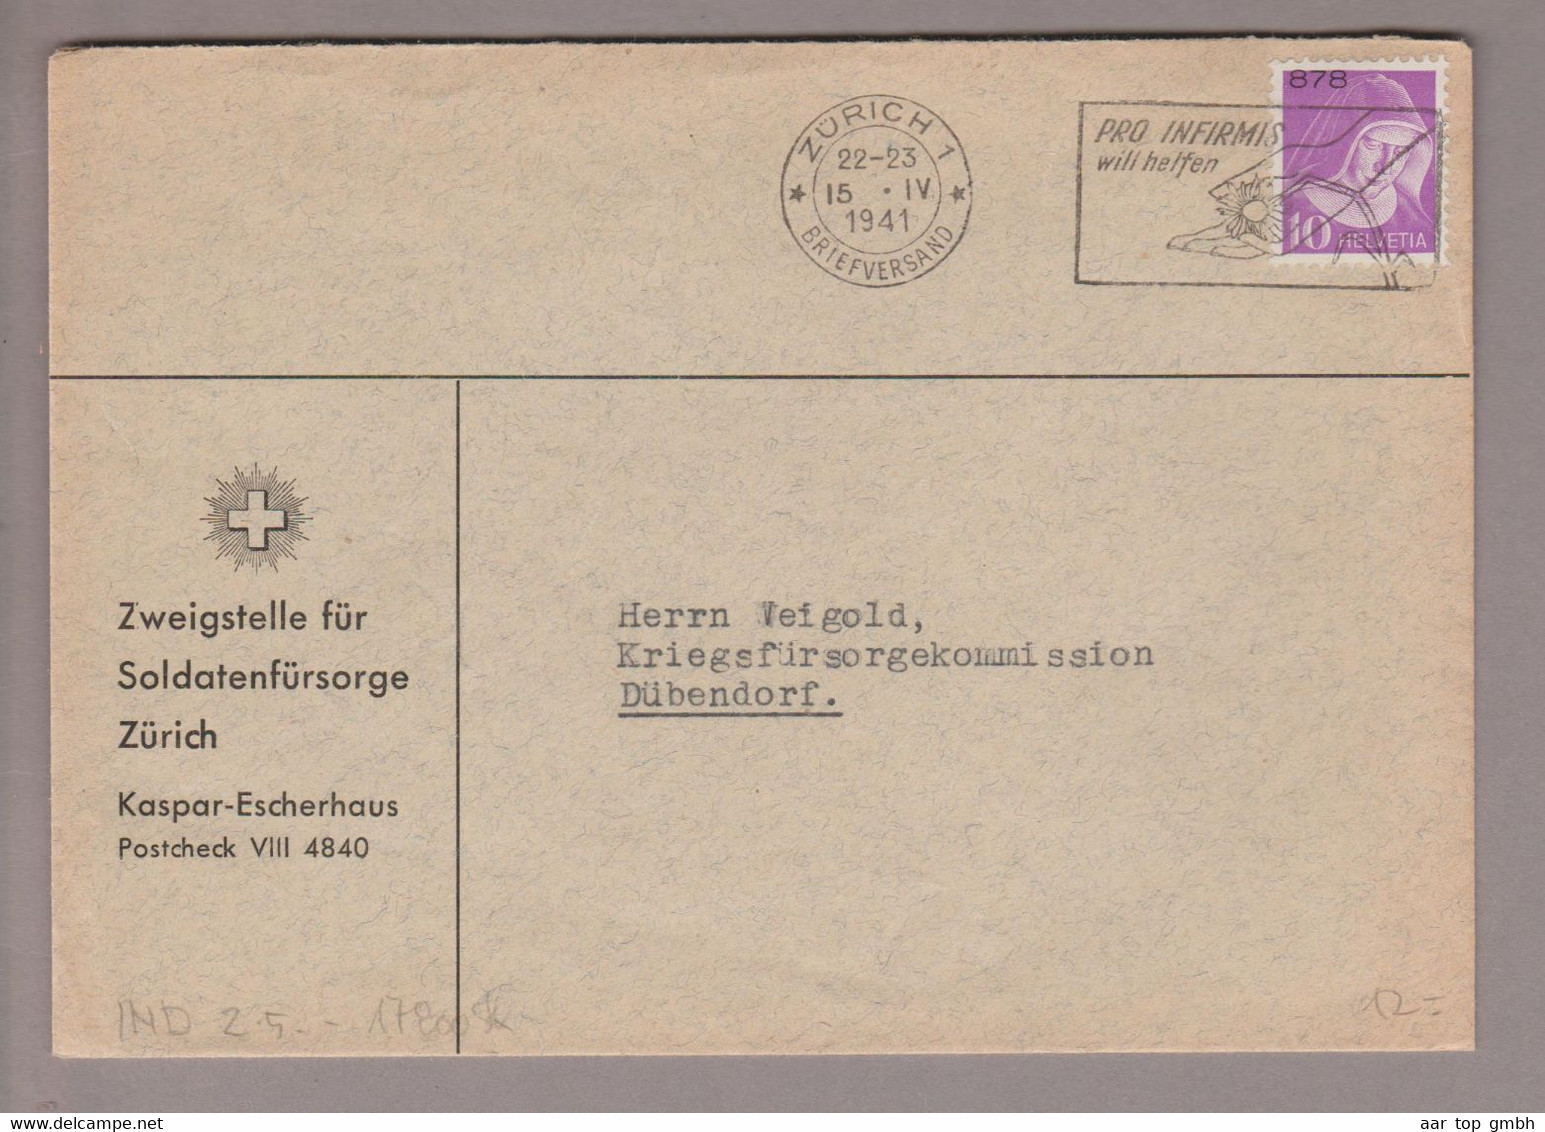 CH Portofreiheit Zu#15z 10Rp. GR#878 Brief Soldatenfürsorge Zürich 1941-04-15 Zürich1 - Vrijstelling Van Portkosten